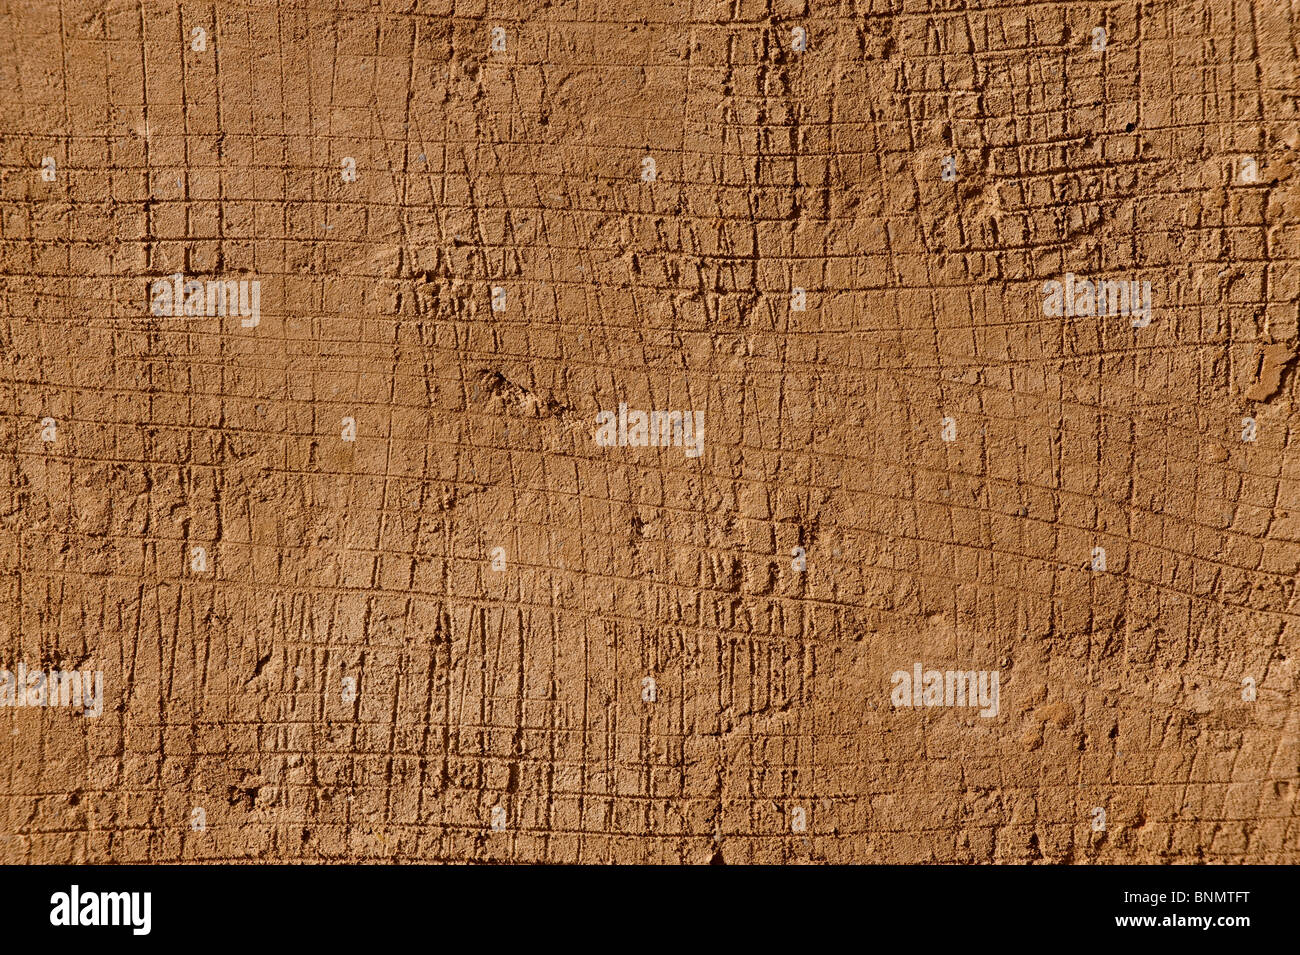 Couche inférieure de plâtre, mur de brique de boue traditionnel, Figuig, province de Figuig, région orientale, le Maroc. Banque D'Images